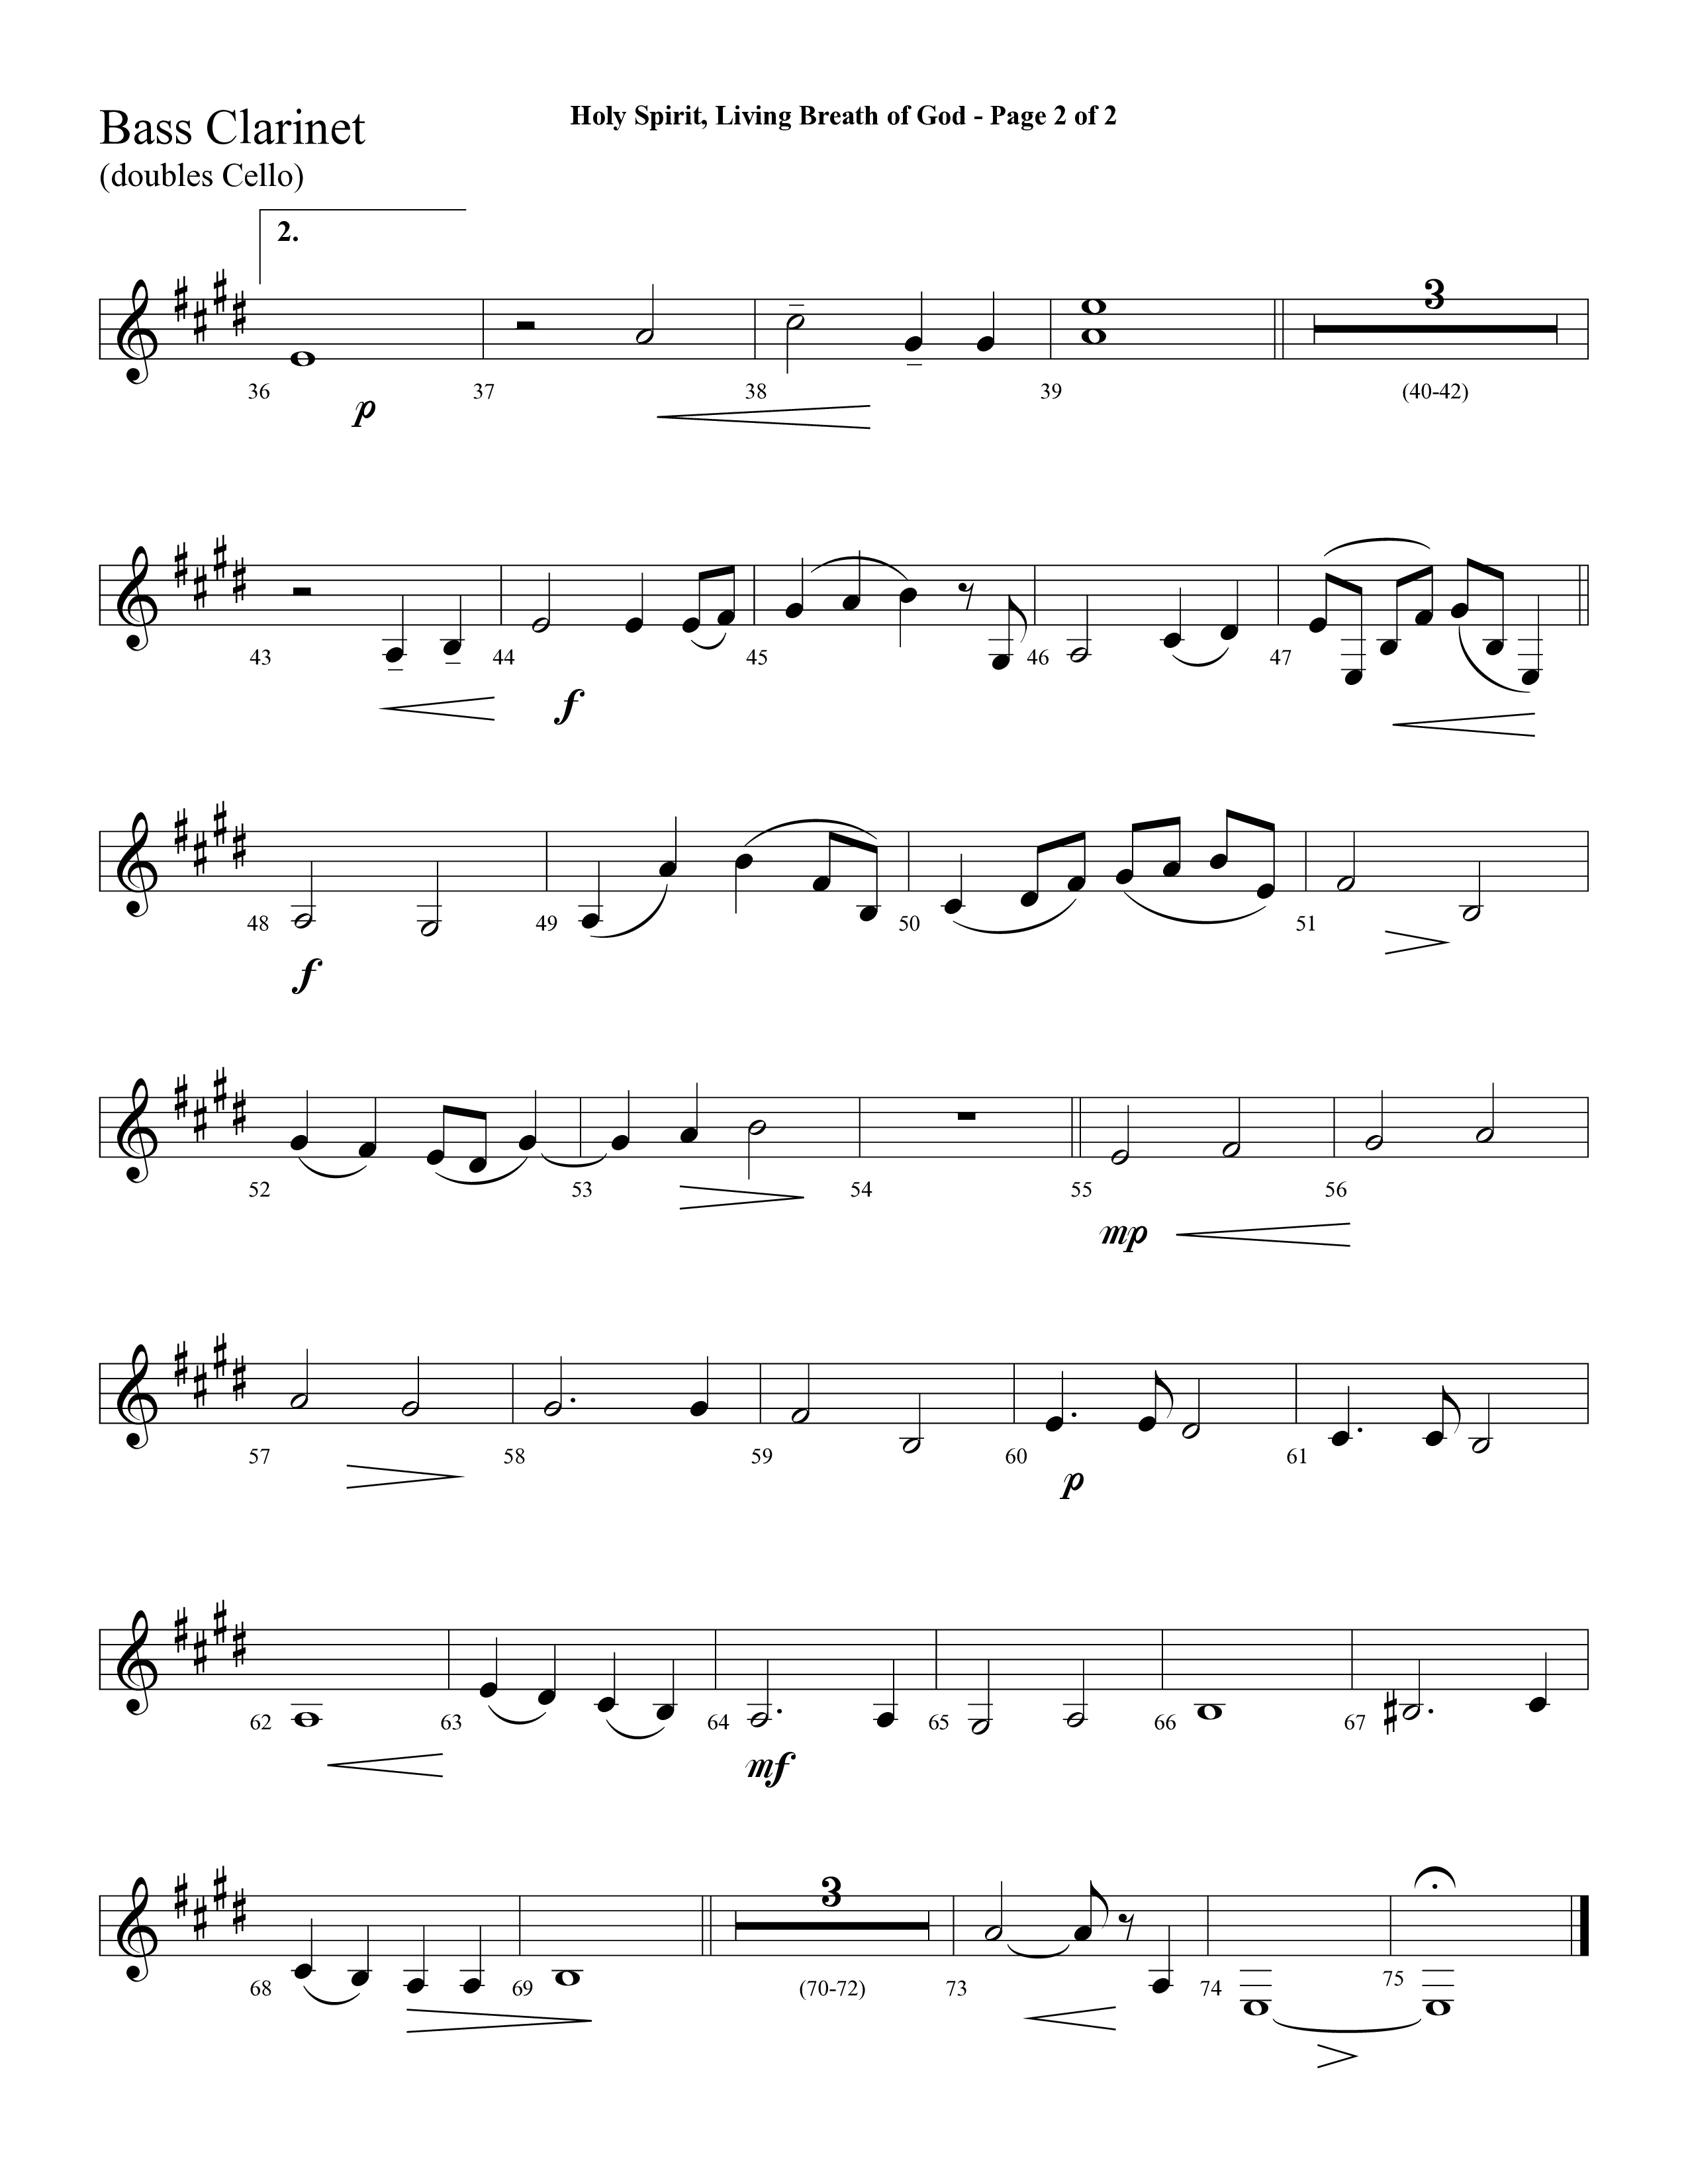 Holy Spirit Living Breath Of God (with Gabriel's Oboe) (Choral Anthem SATB) Bass Clarinet (Lifeway Choral / Arr. David Hamilton)